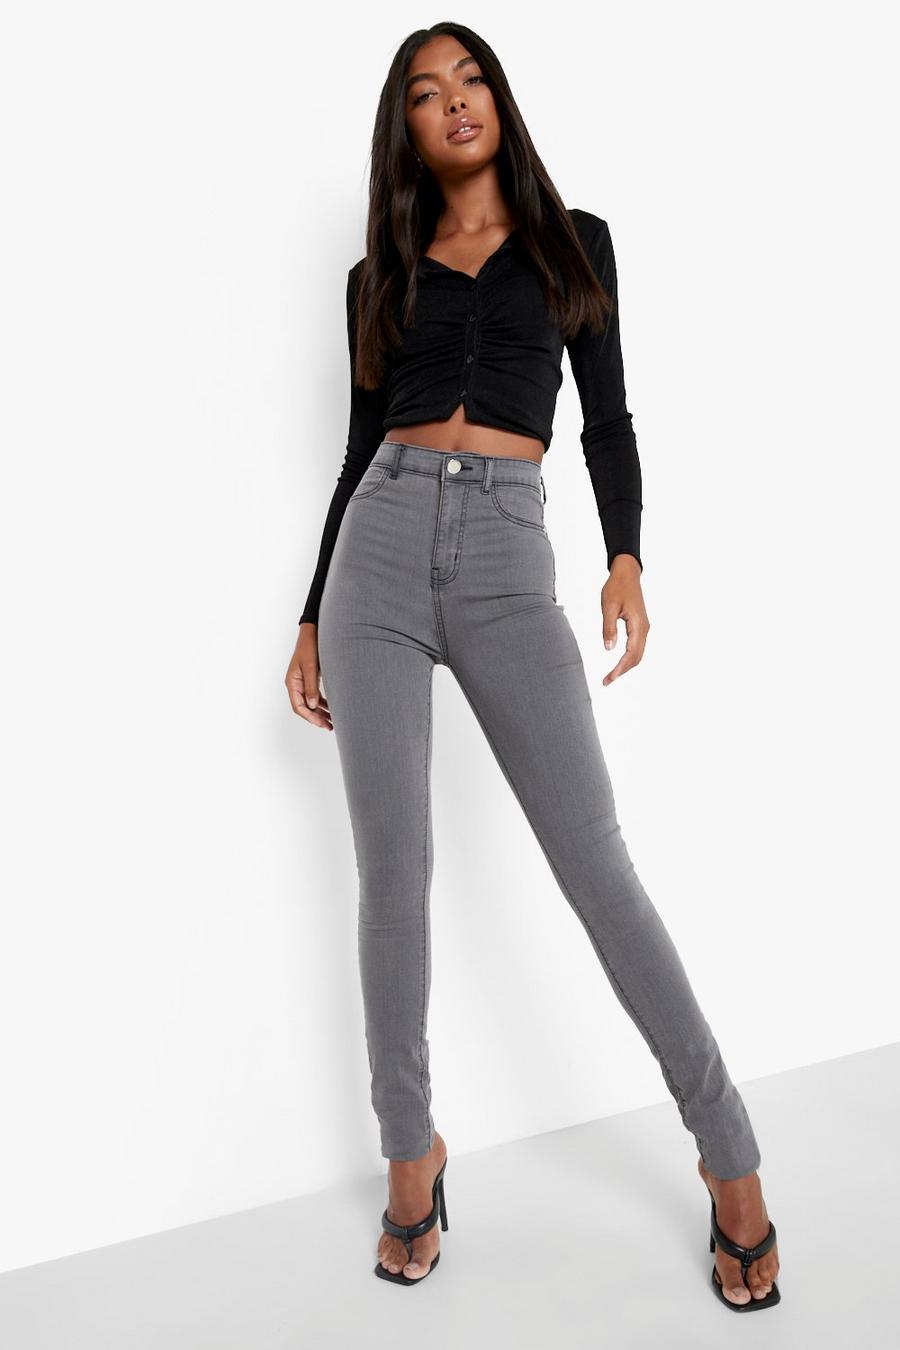 אפור gris טייץ ג'ינס בייסיק לנשים גבוהות